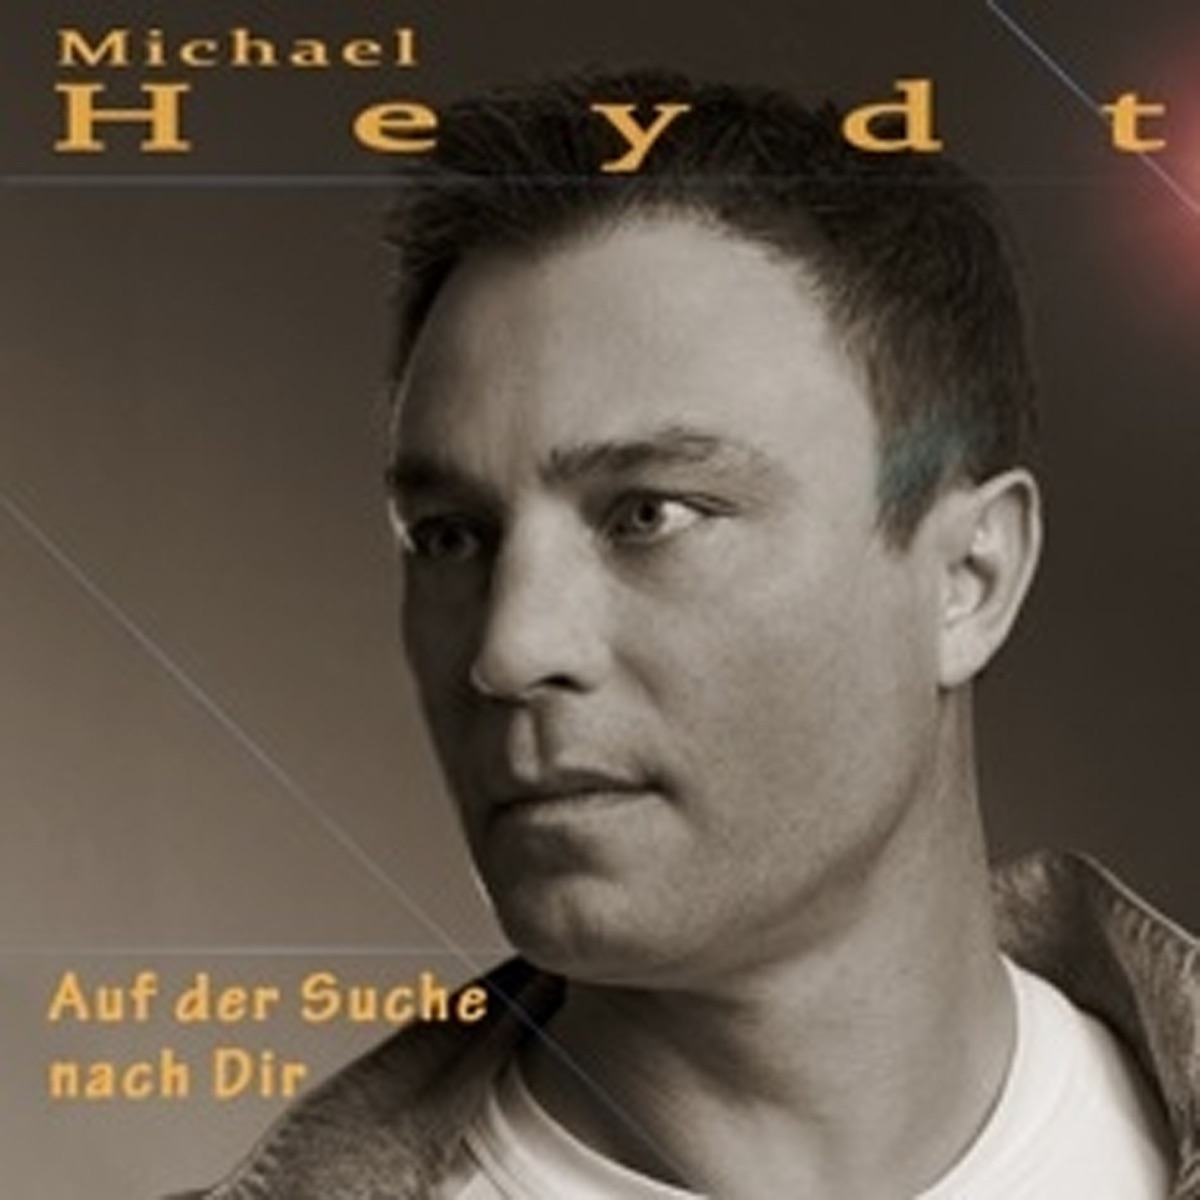 „Auf der Suche nach Dir - Single“ von <b>Michael Heydt</b> in iTunes - 1200x1200sr